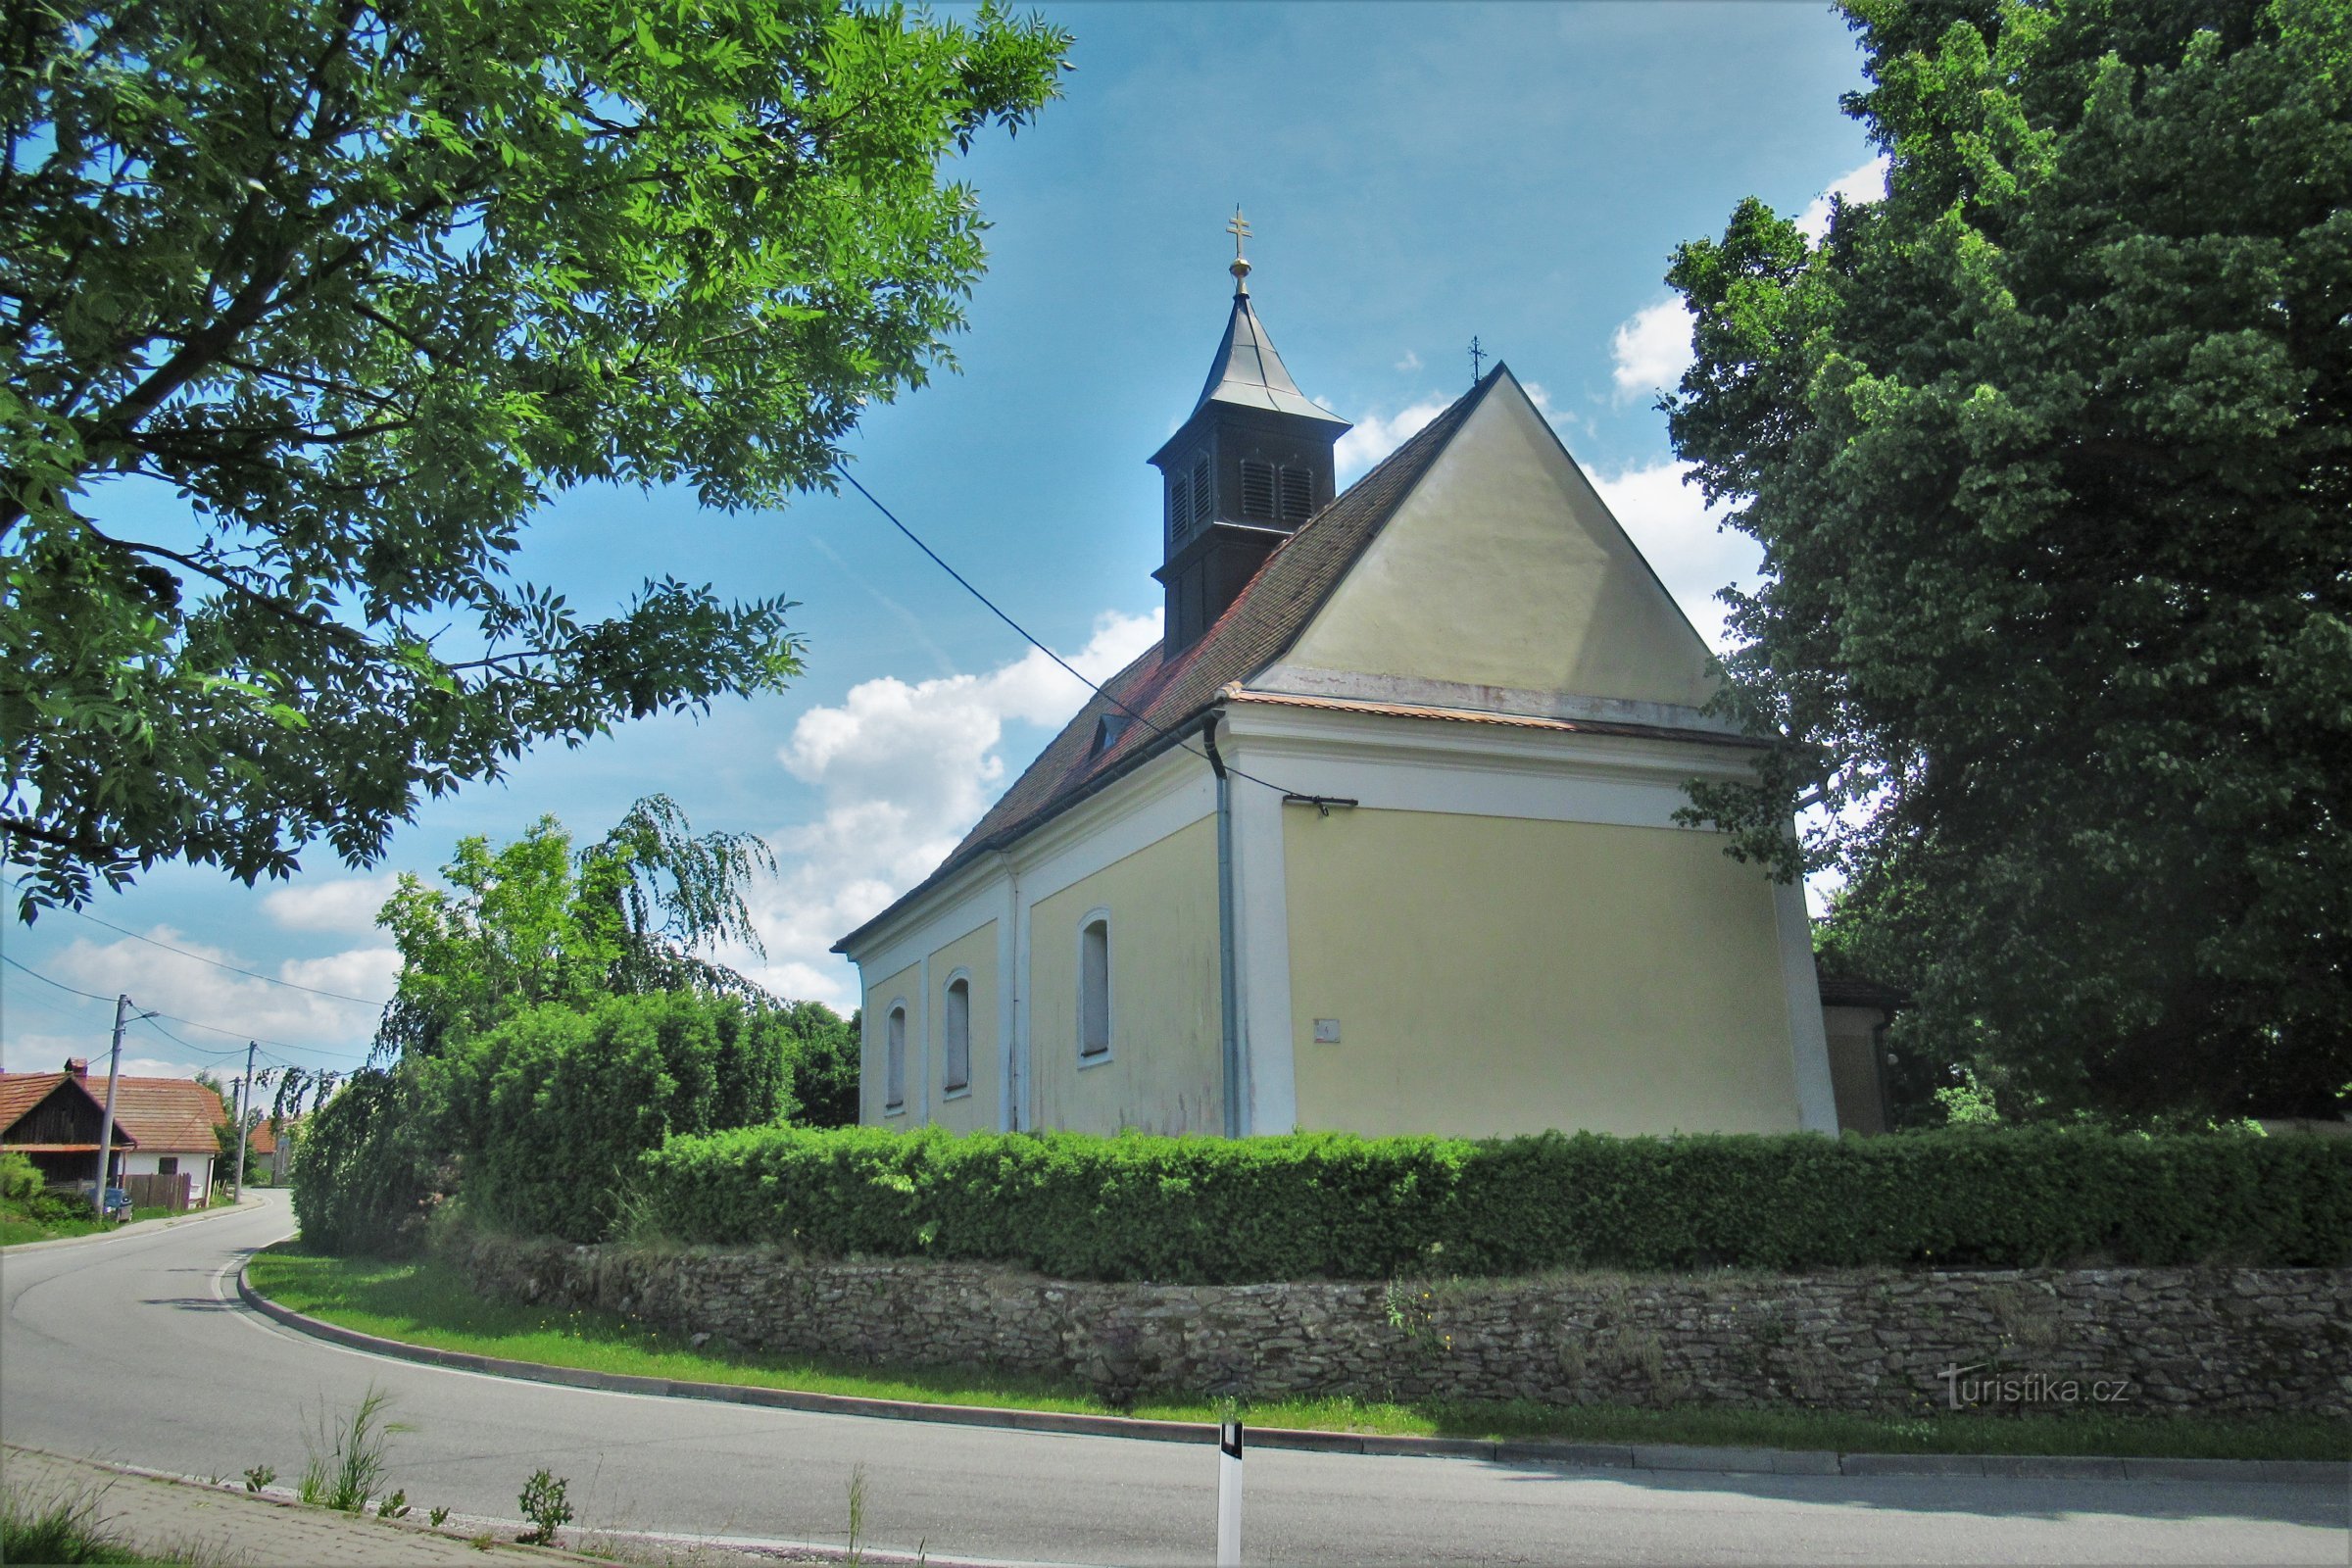 Nemčice - Kyrkan St. Nicholas